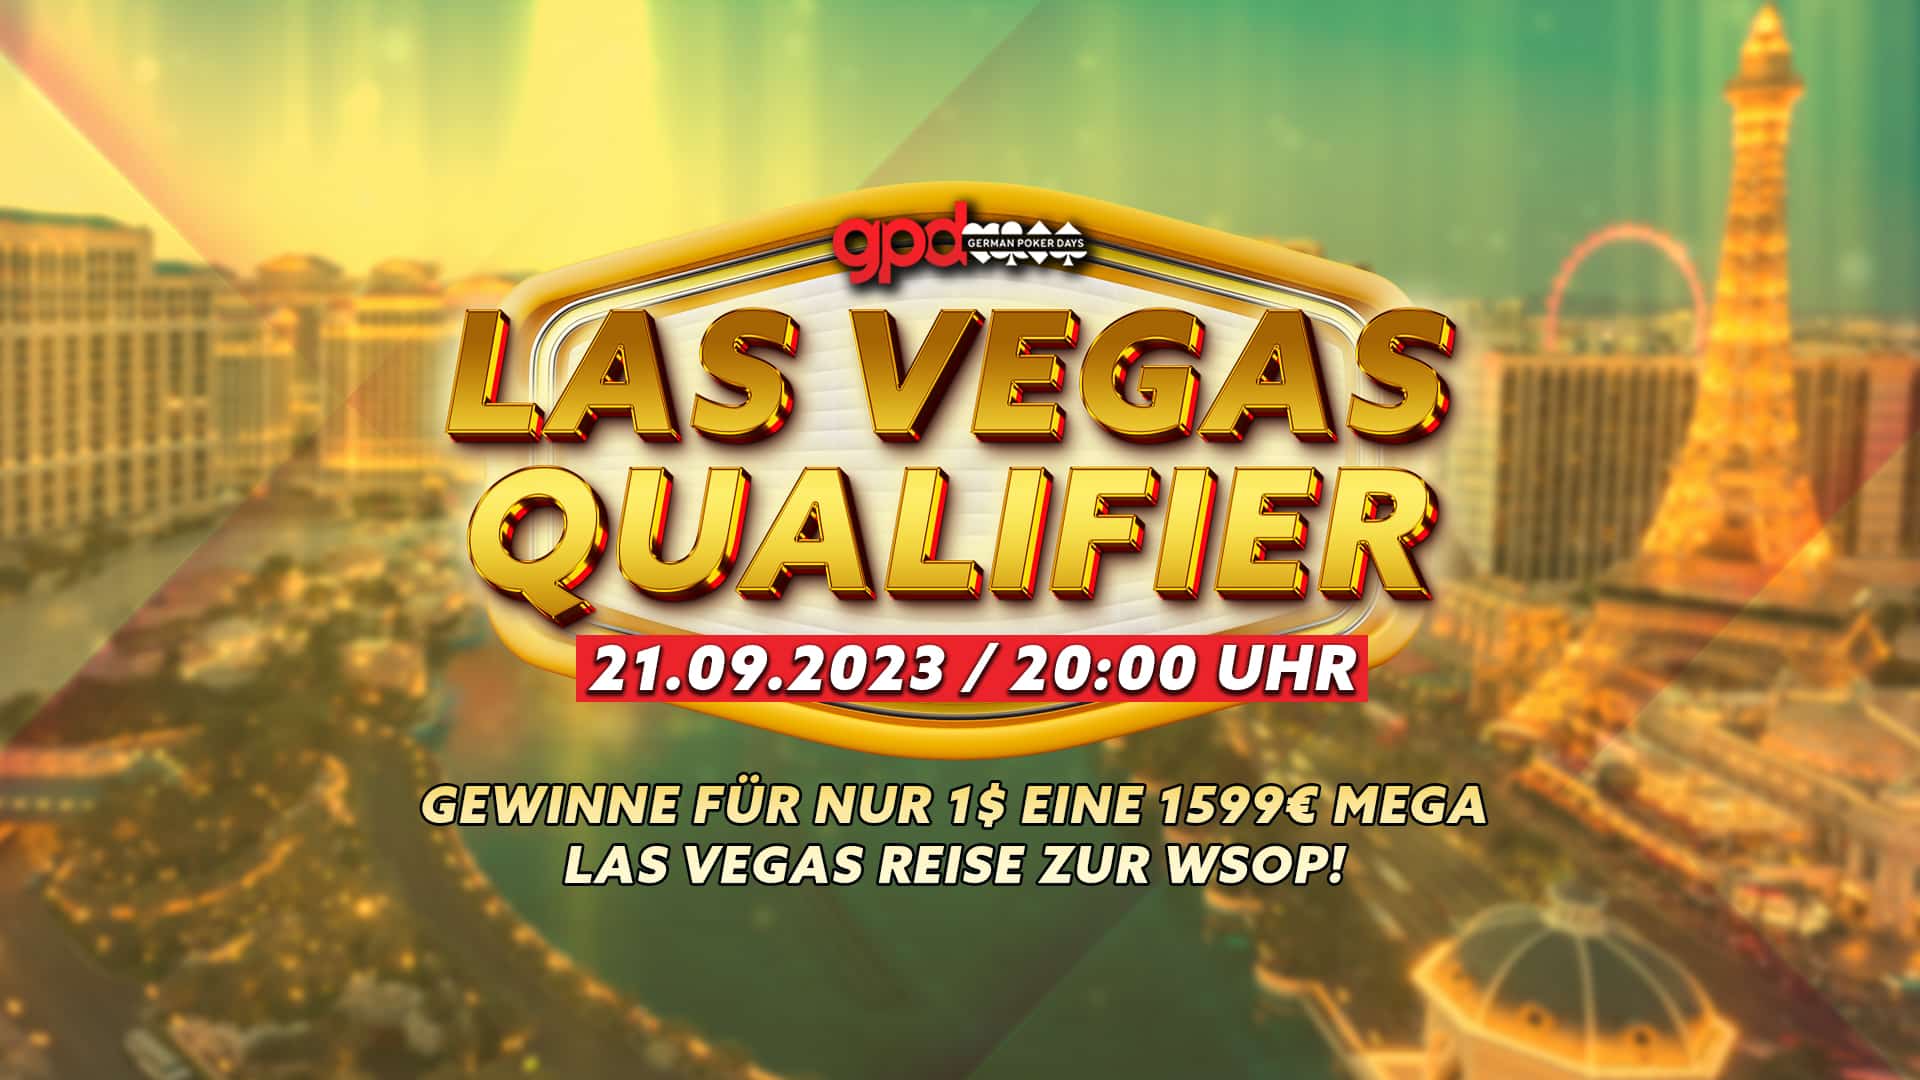 German Poker Days Las Vegas Qualifier – Gewinne für nur 1$ eine 1599€ Las Vegas Reise